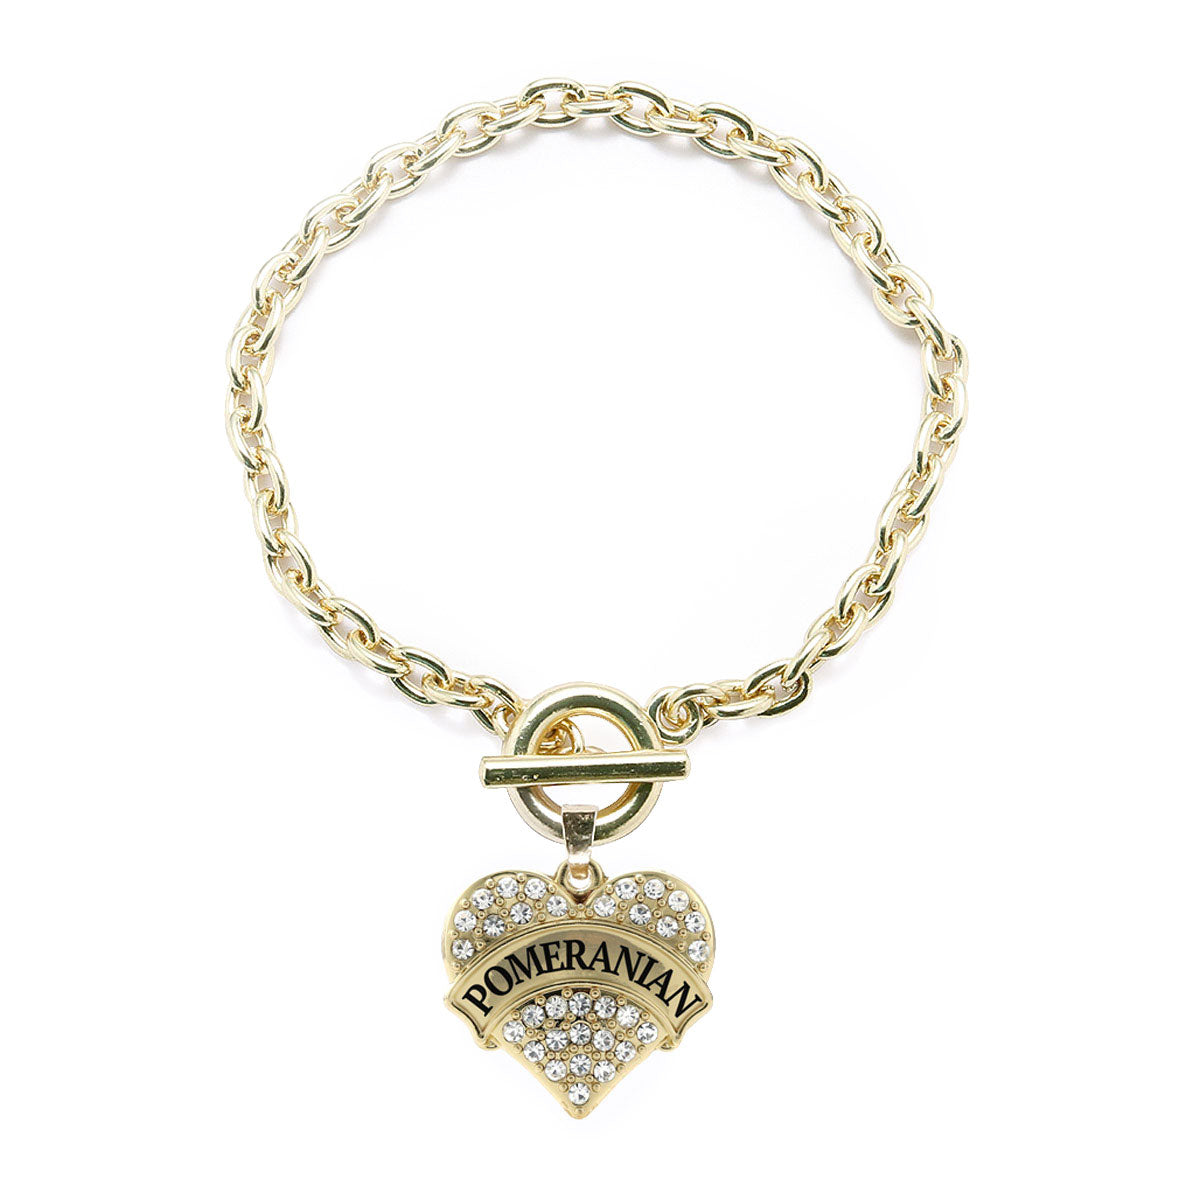 Gold Pomeranian Pave Heart Charm Toggle Bracelet